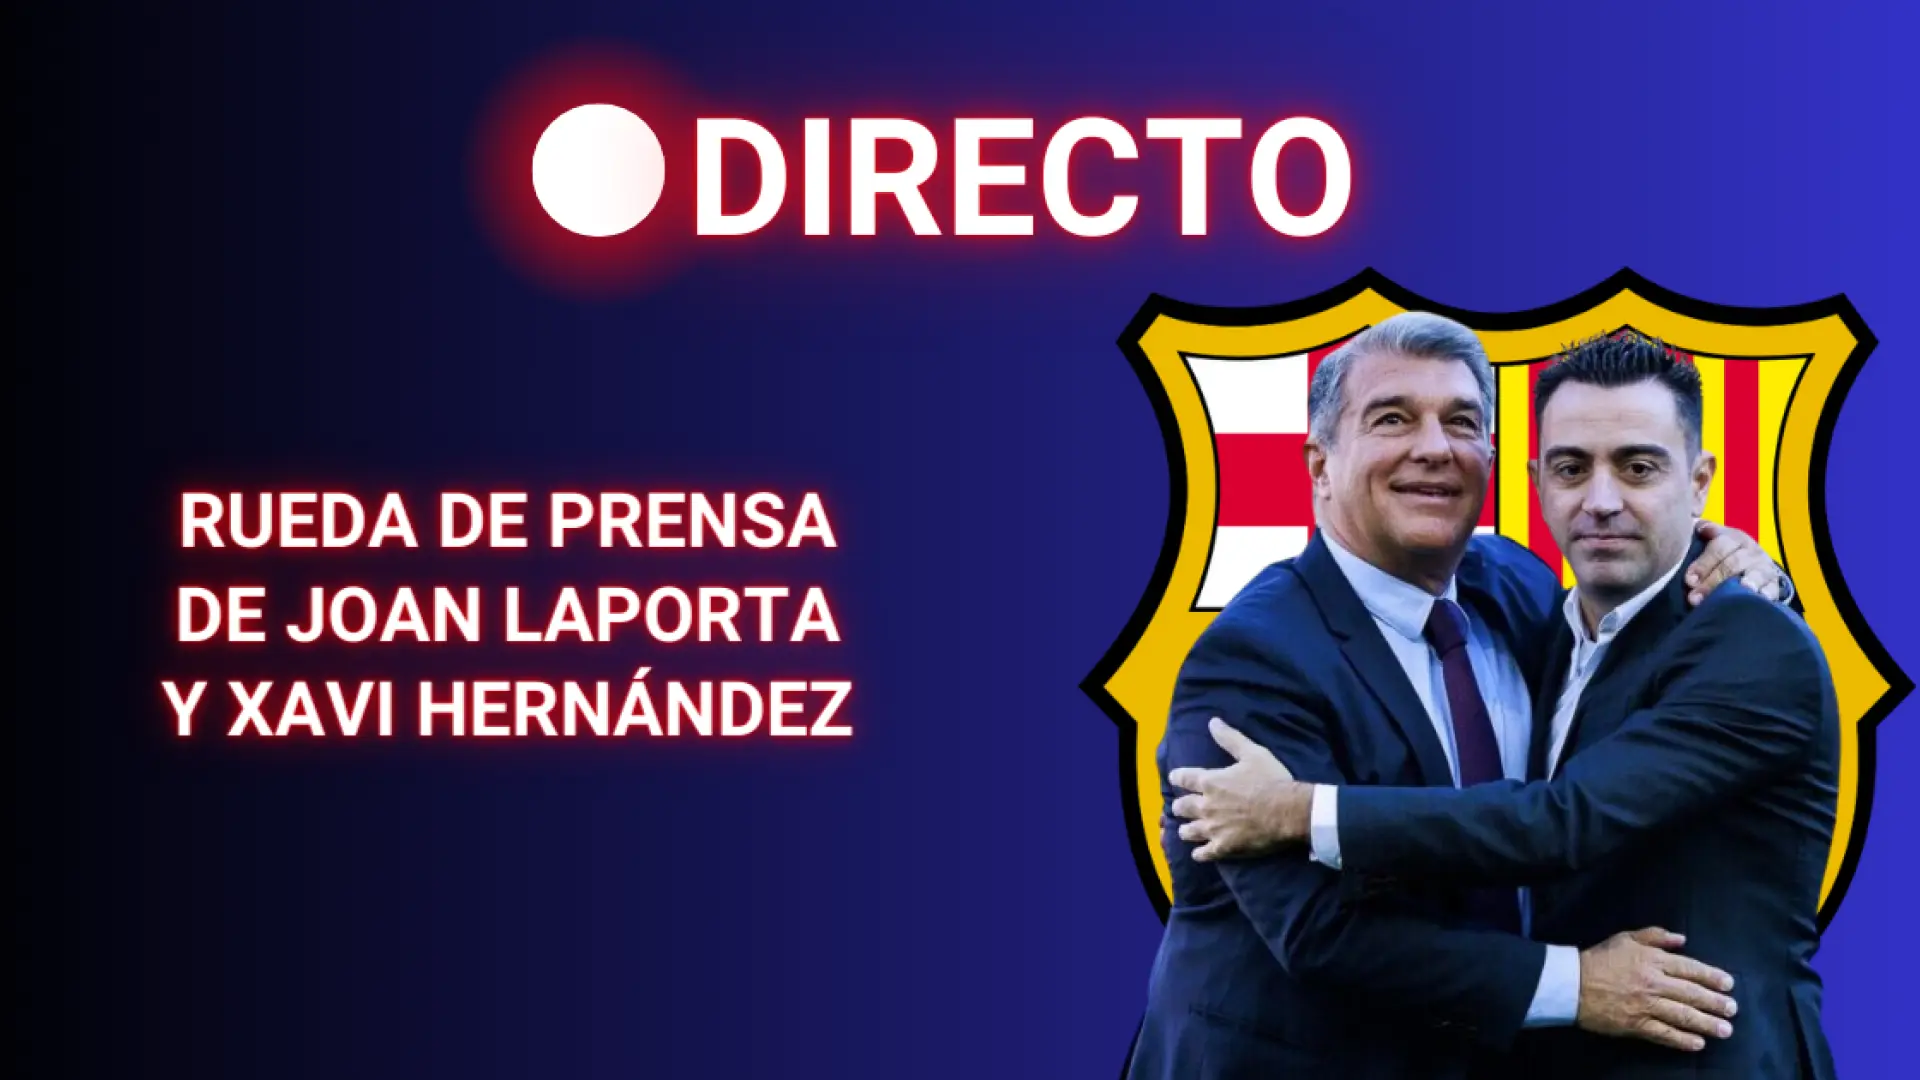 Rueda de prensa de Xavi Hernández y Joan Laporta, en directo: últimas noticias sobre la continuidad del entrenador en el Barça